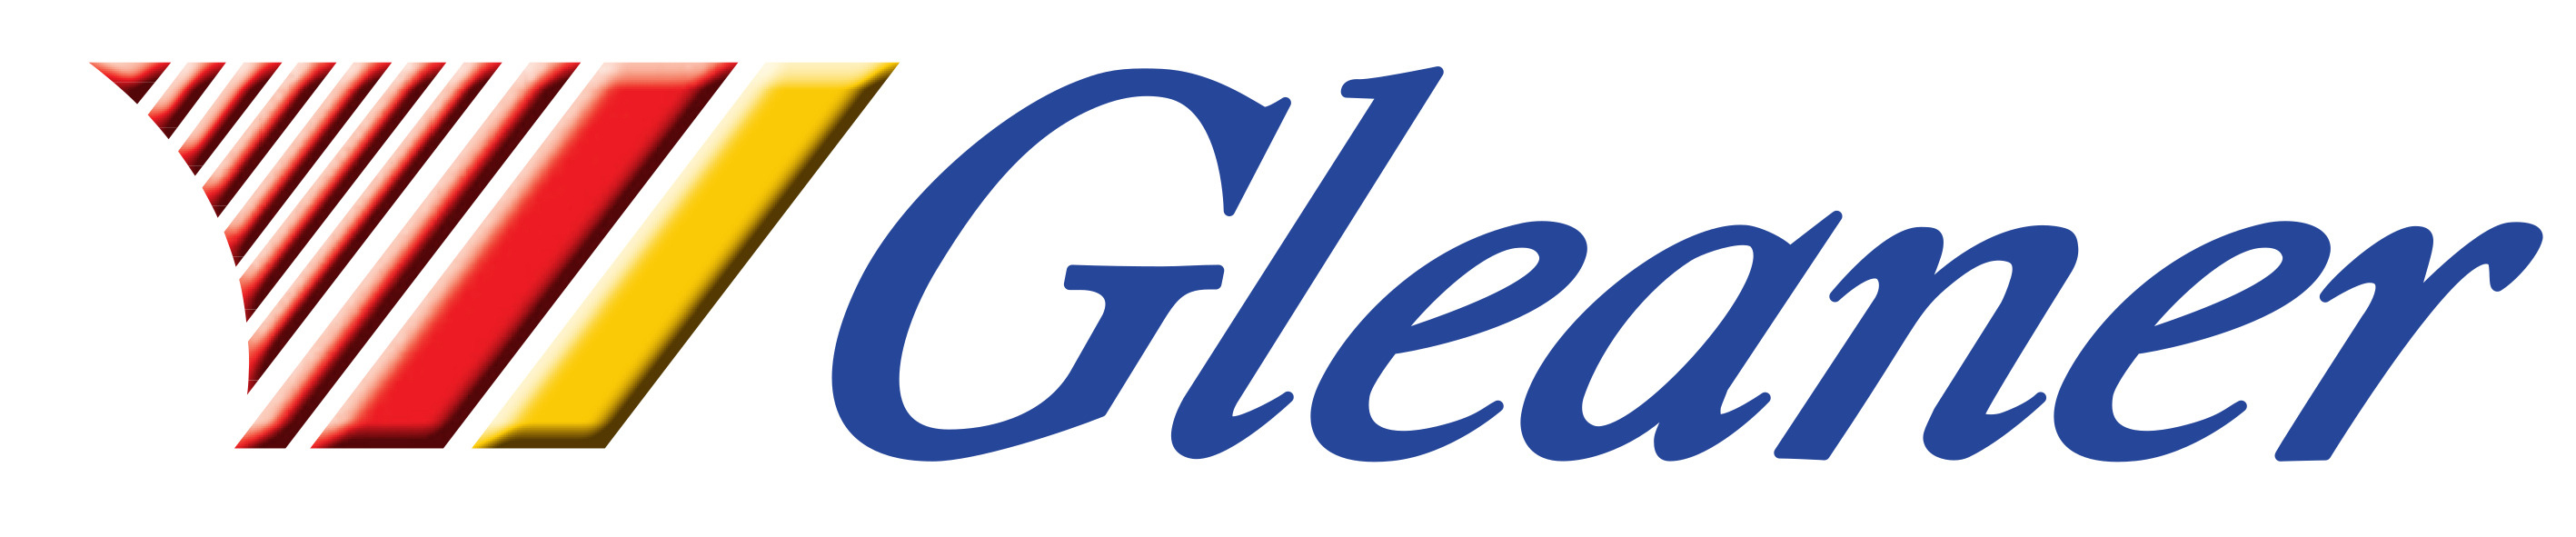 Platinum Partner - Gleaner Ltd.